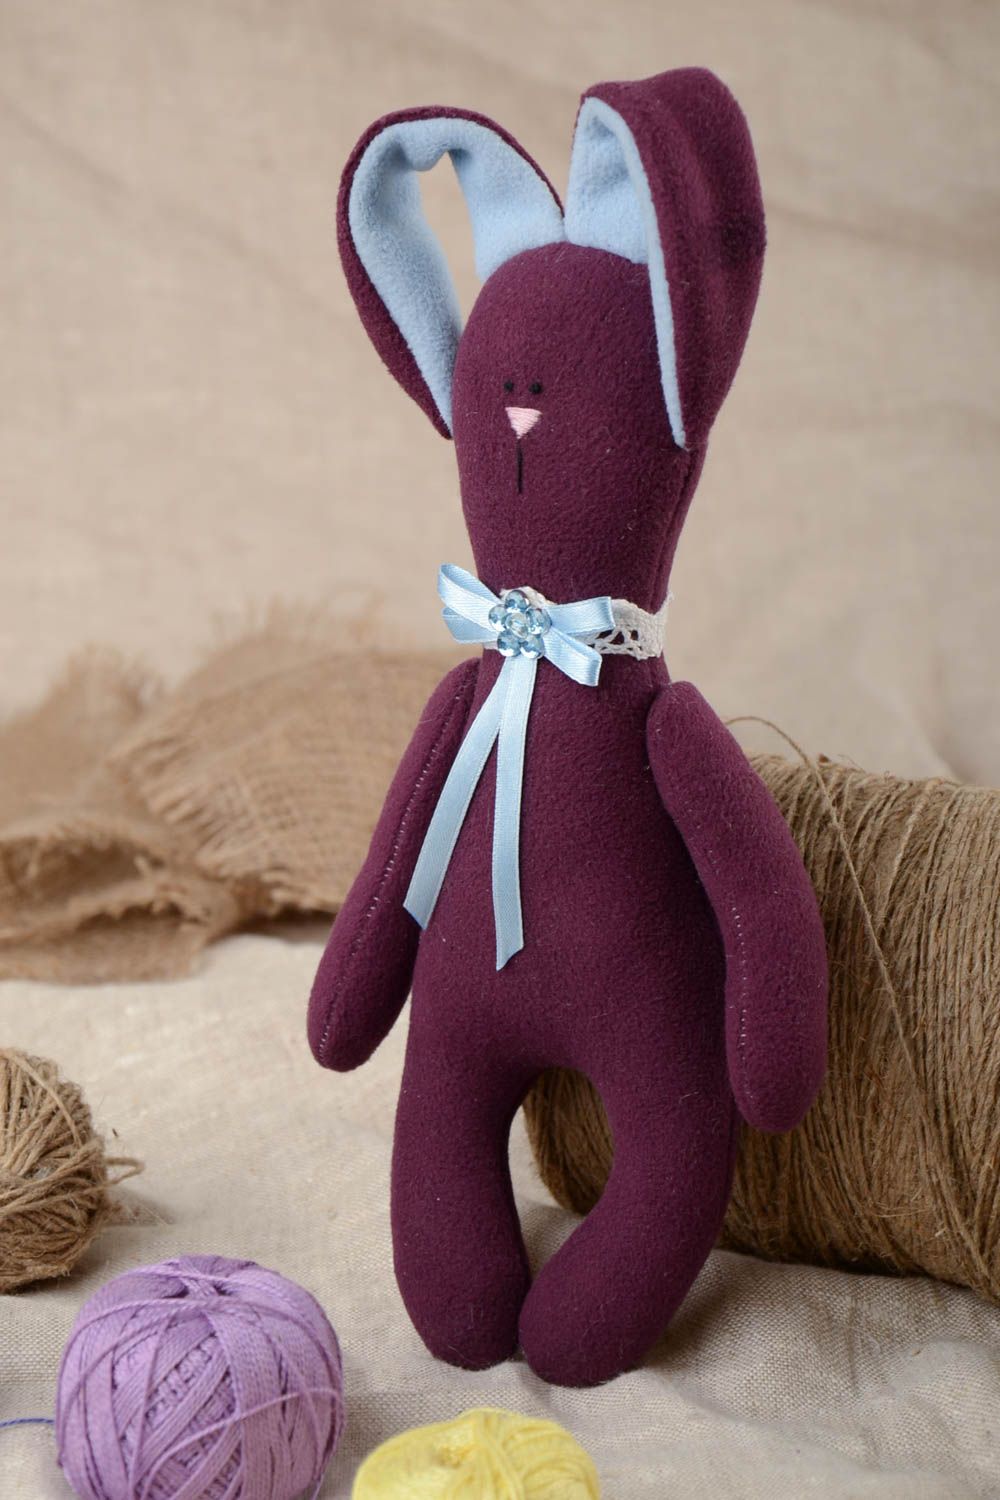 Petite peluche textile en tissu polaire violette faite main lapin pour enfant photo 1